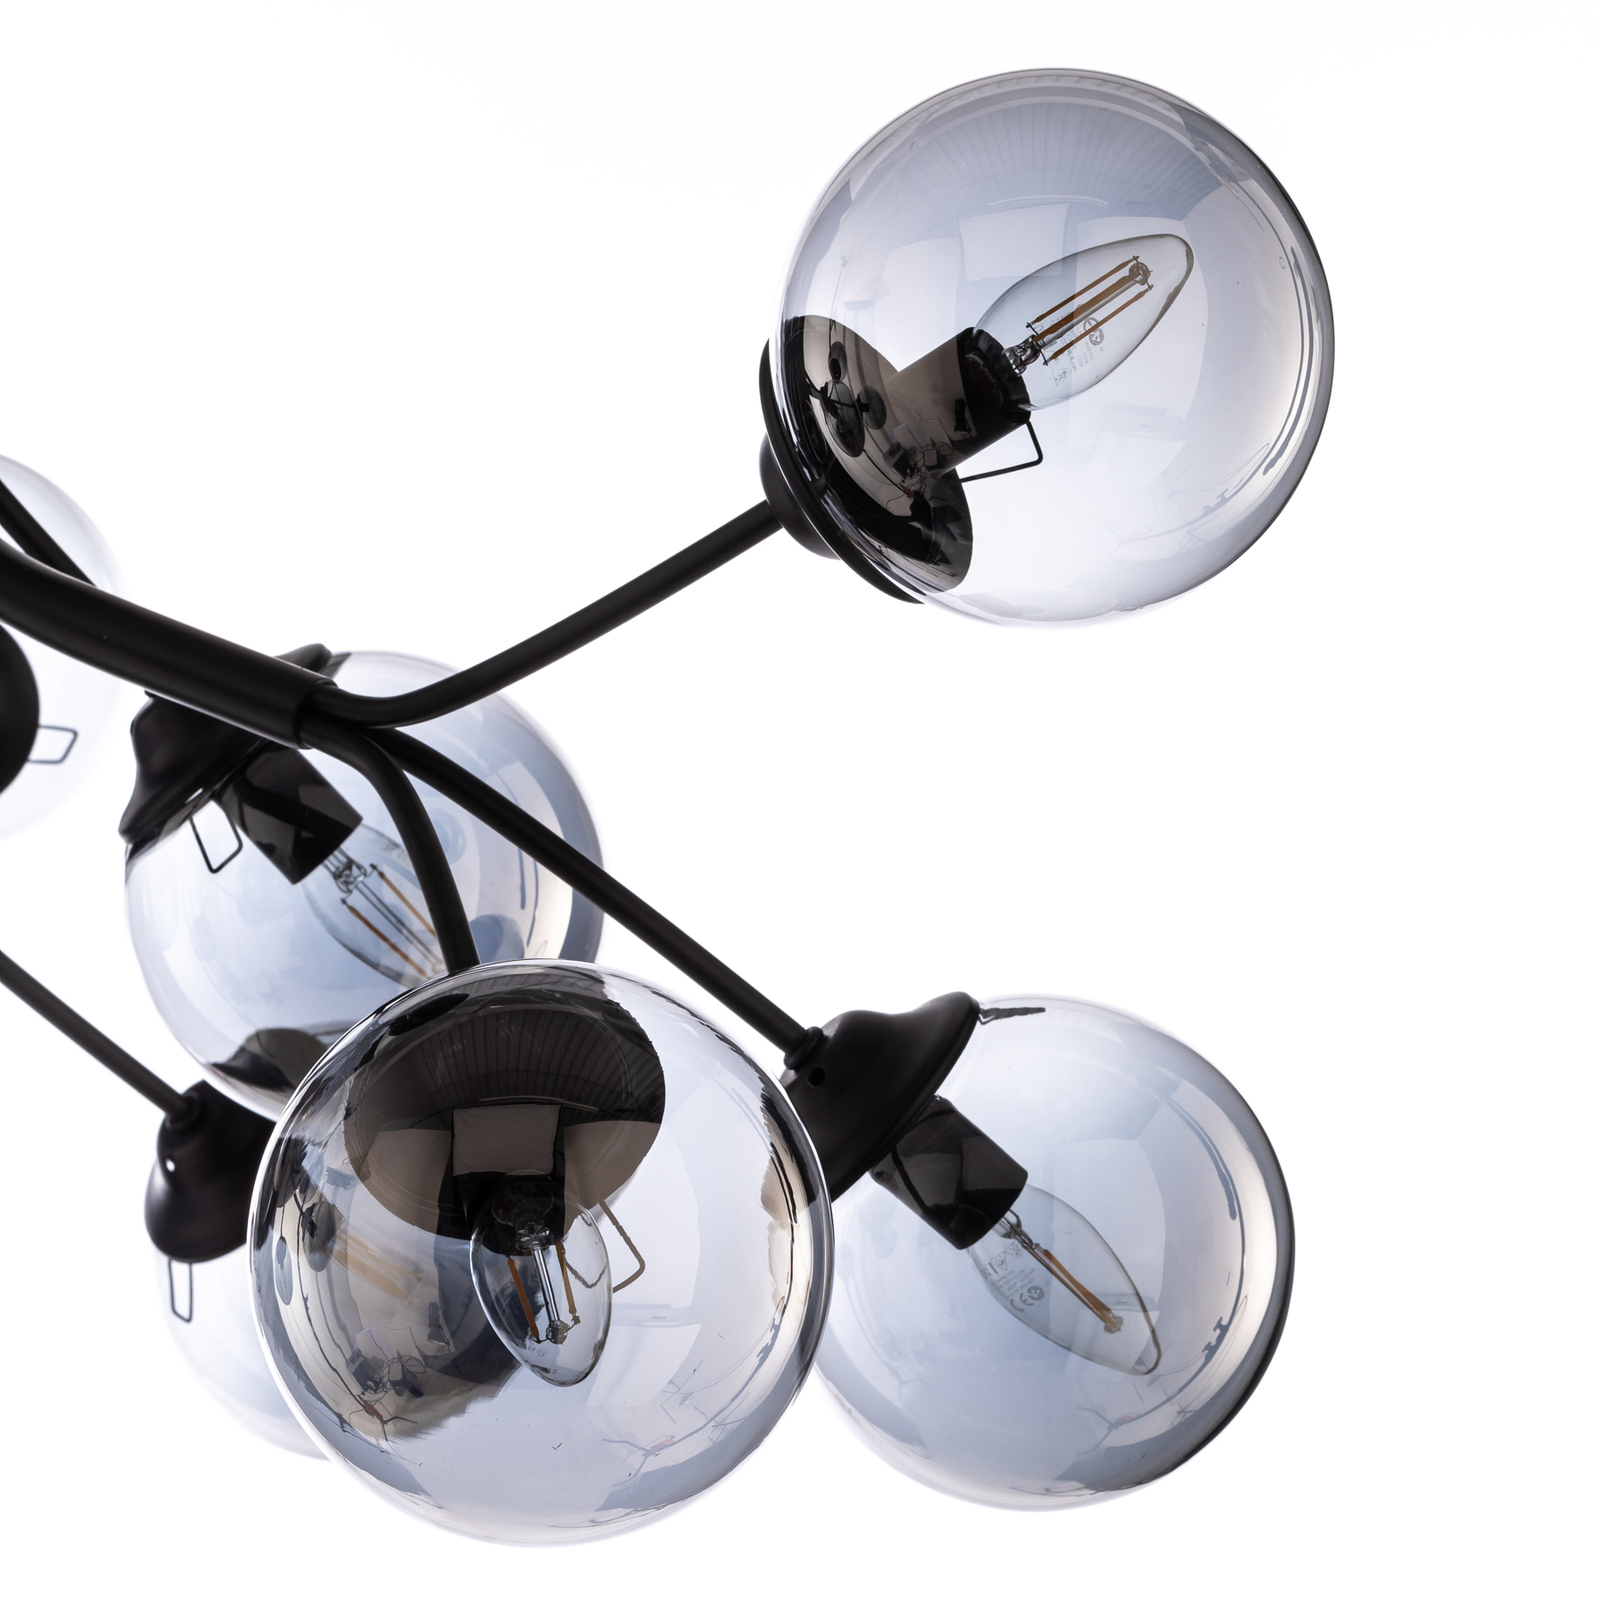 AV-4286-12-BSY ceiling light, smoked glass globes